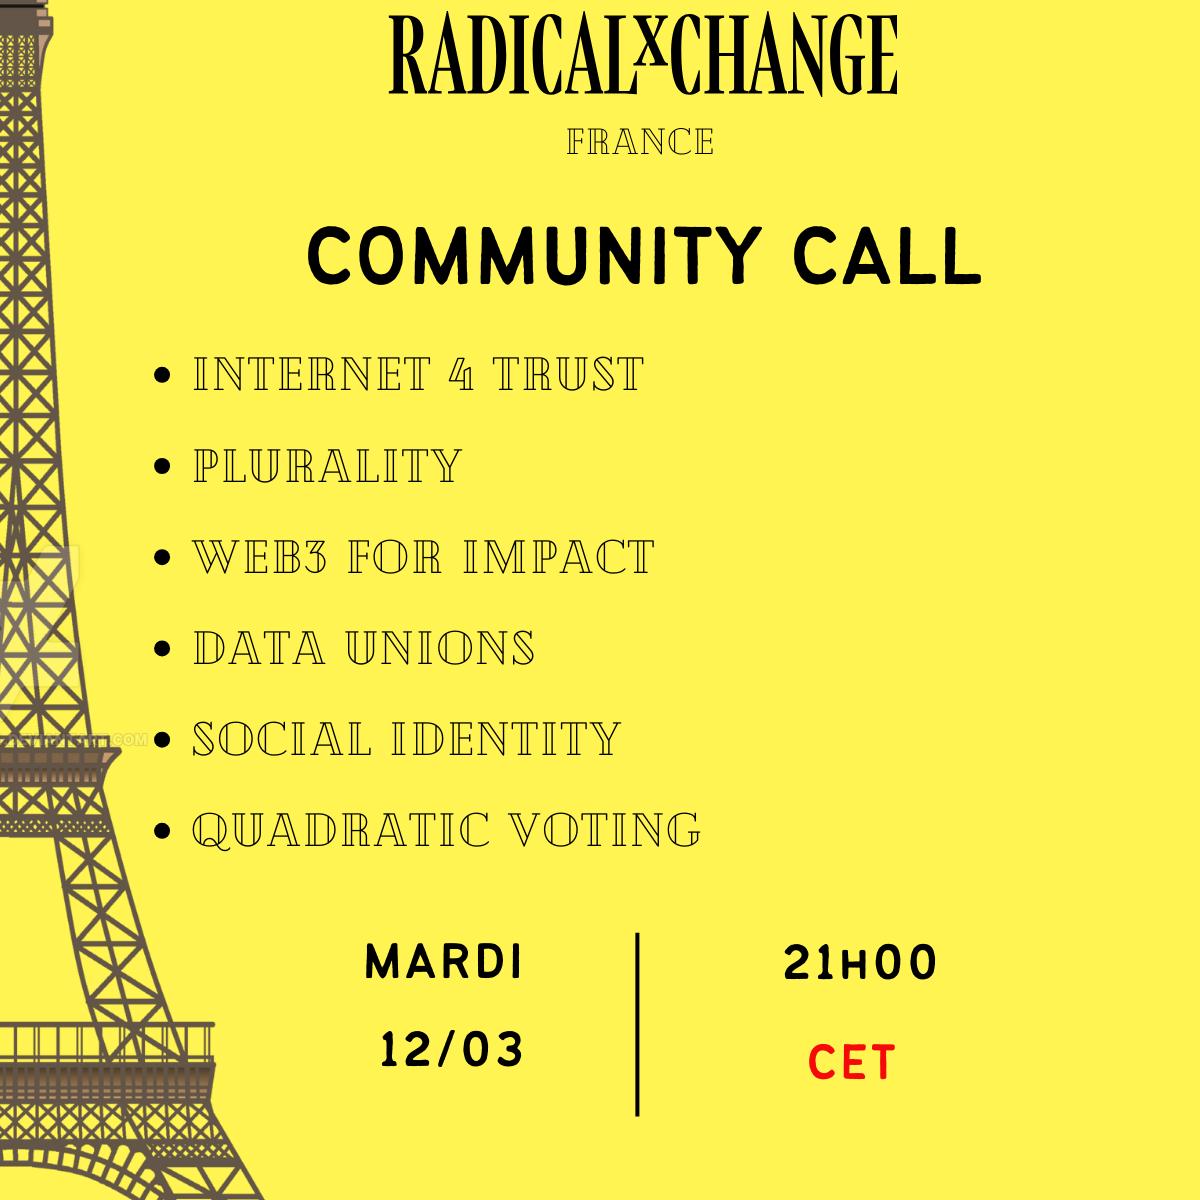 RxC France Community Call, c'est Mardi 12 Mars a 21h CET. DM si vous etes interesses.